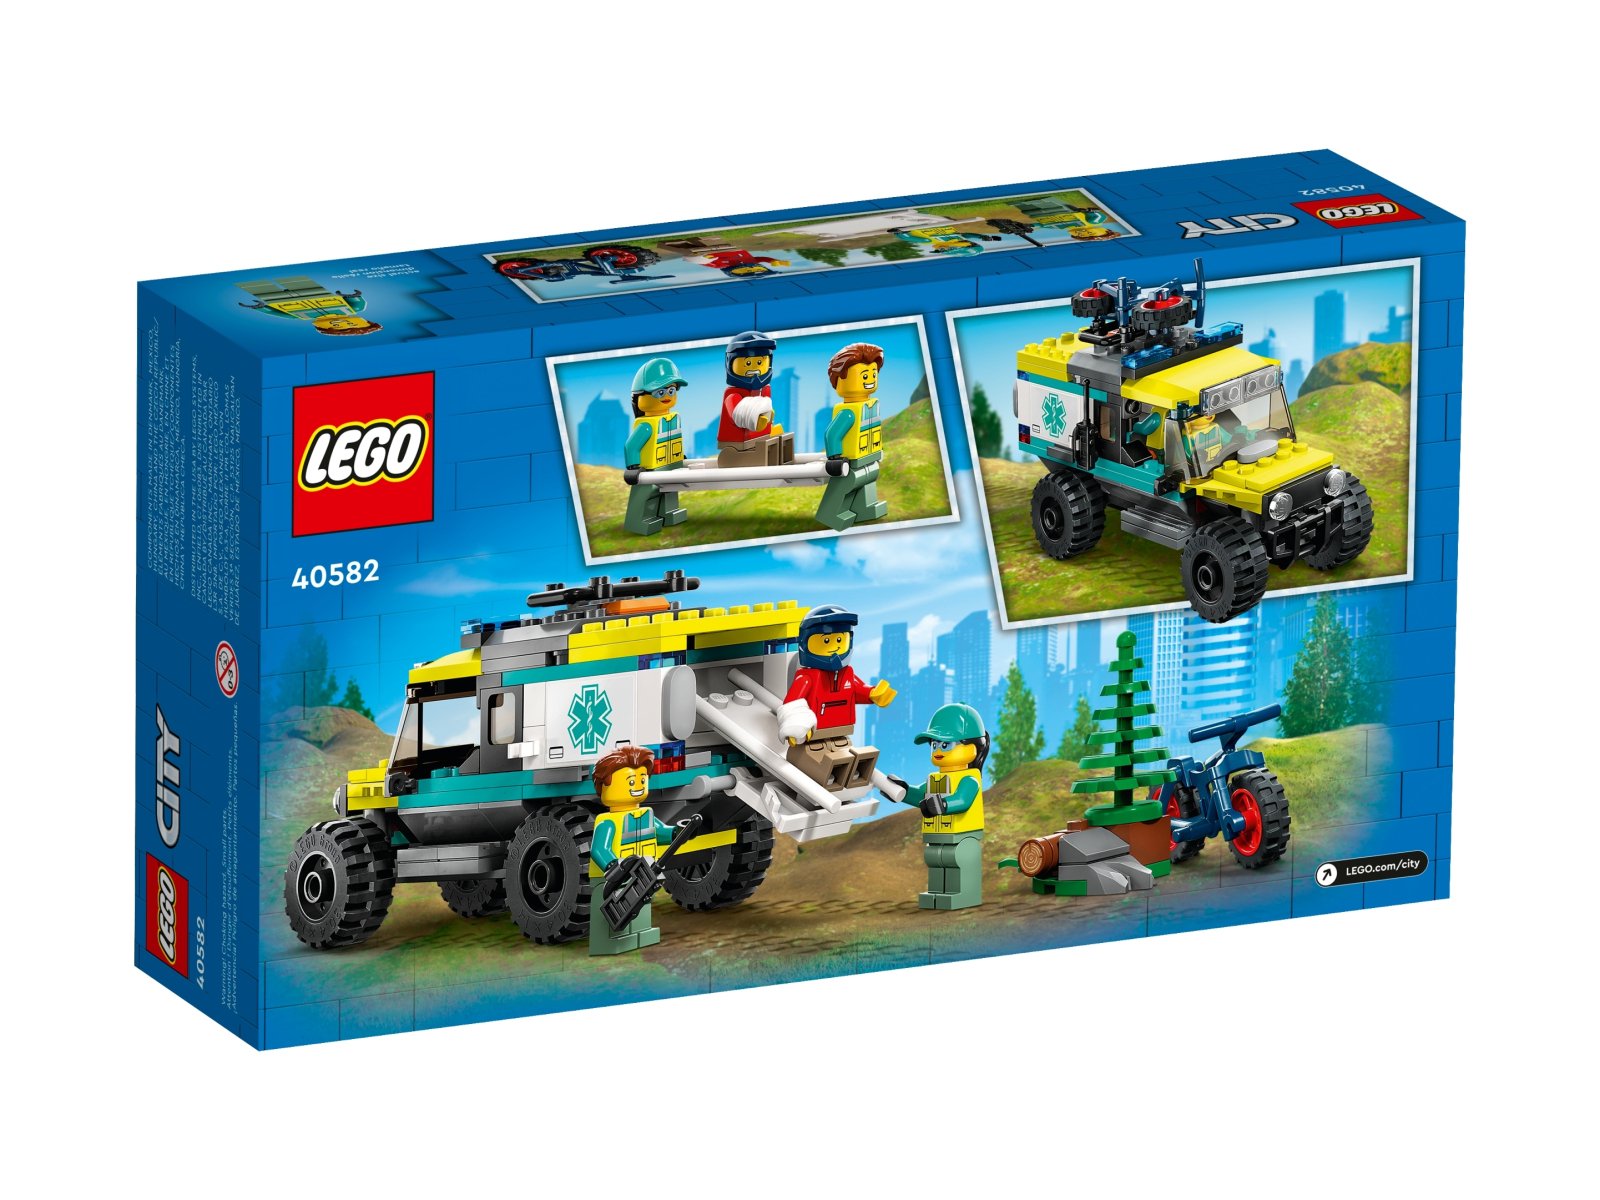 LEGO City 40582 Terenowa karetka z napędem 4x4